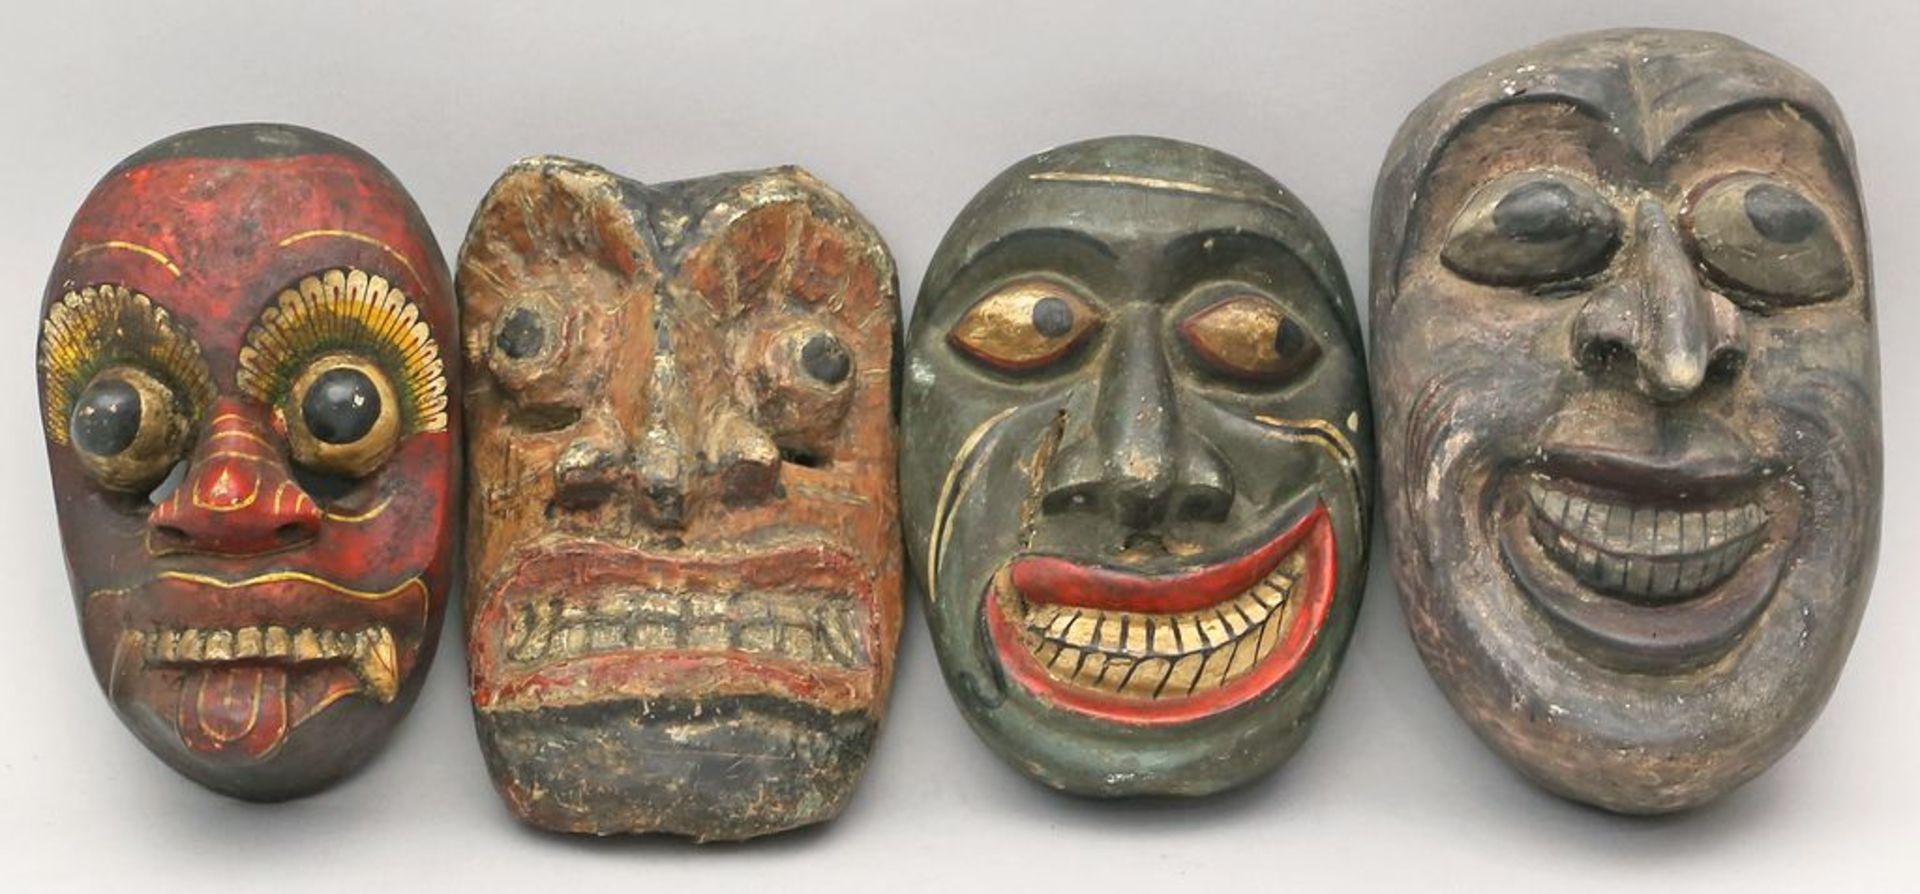 4 div. Masken. Holz, geschnitzt und farbig gefasst. Java oder Indonesien. H. 18 bis 22